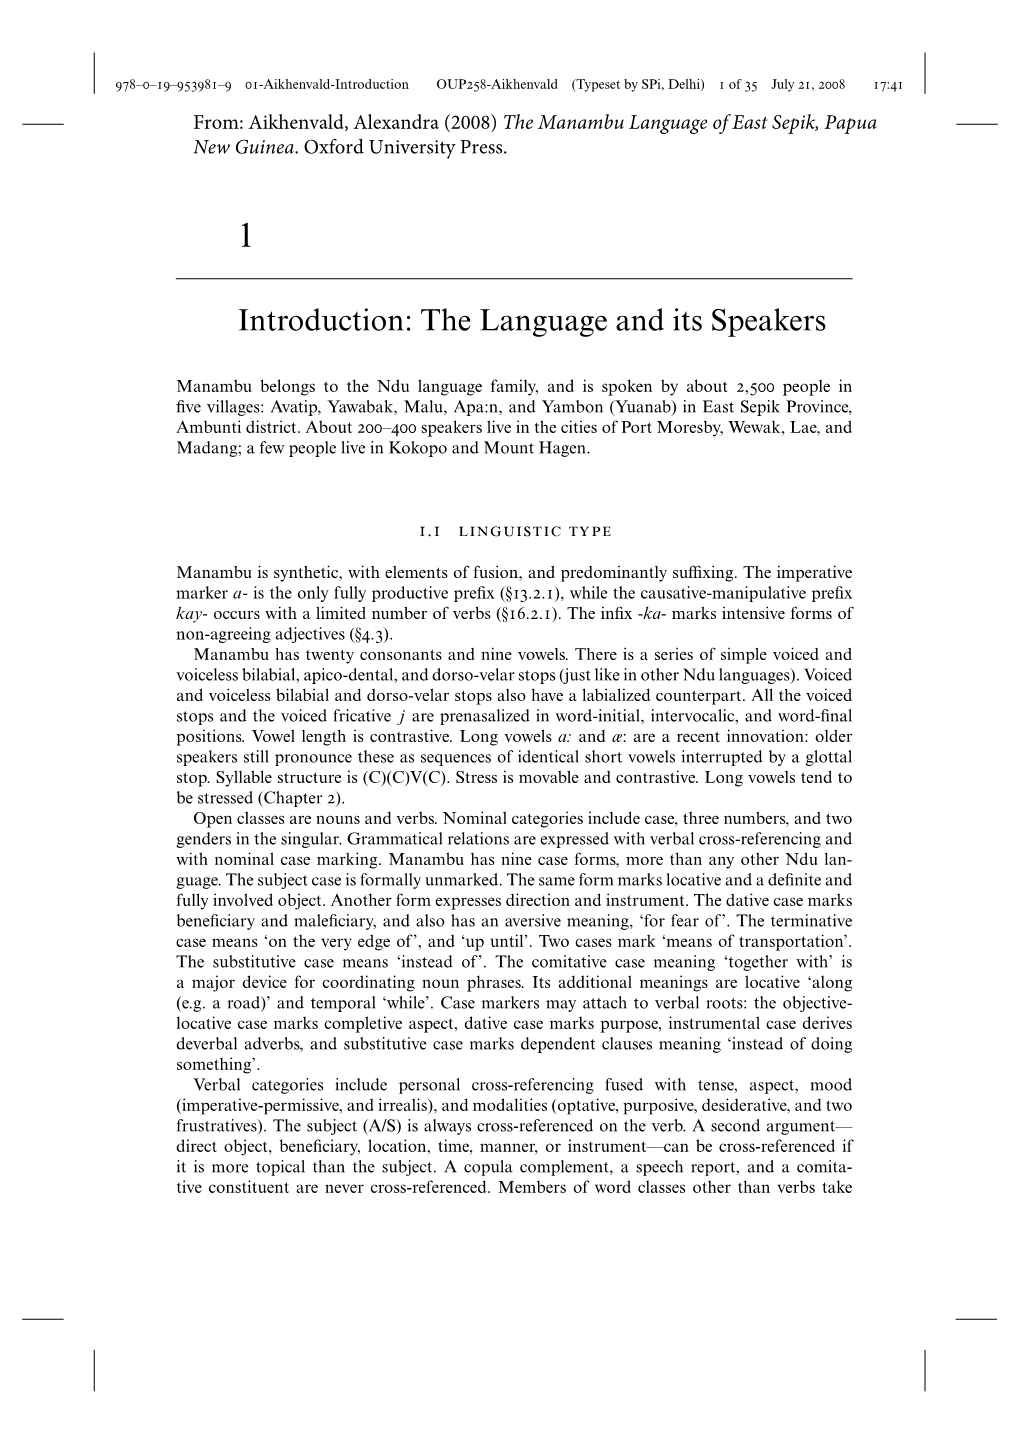 Aikhenvald, A. 2008. the Manambu Language